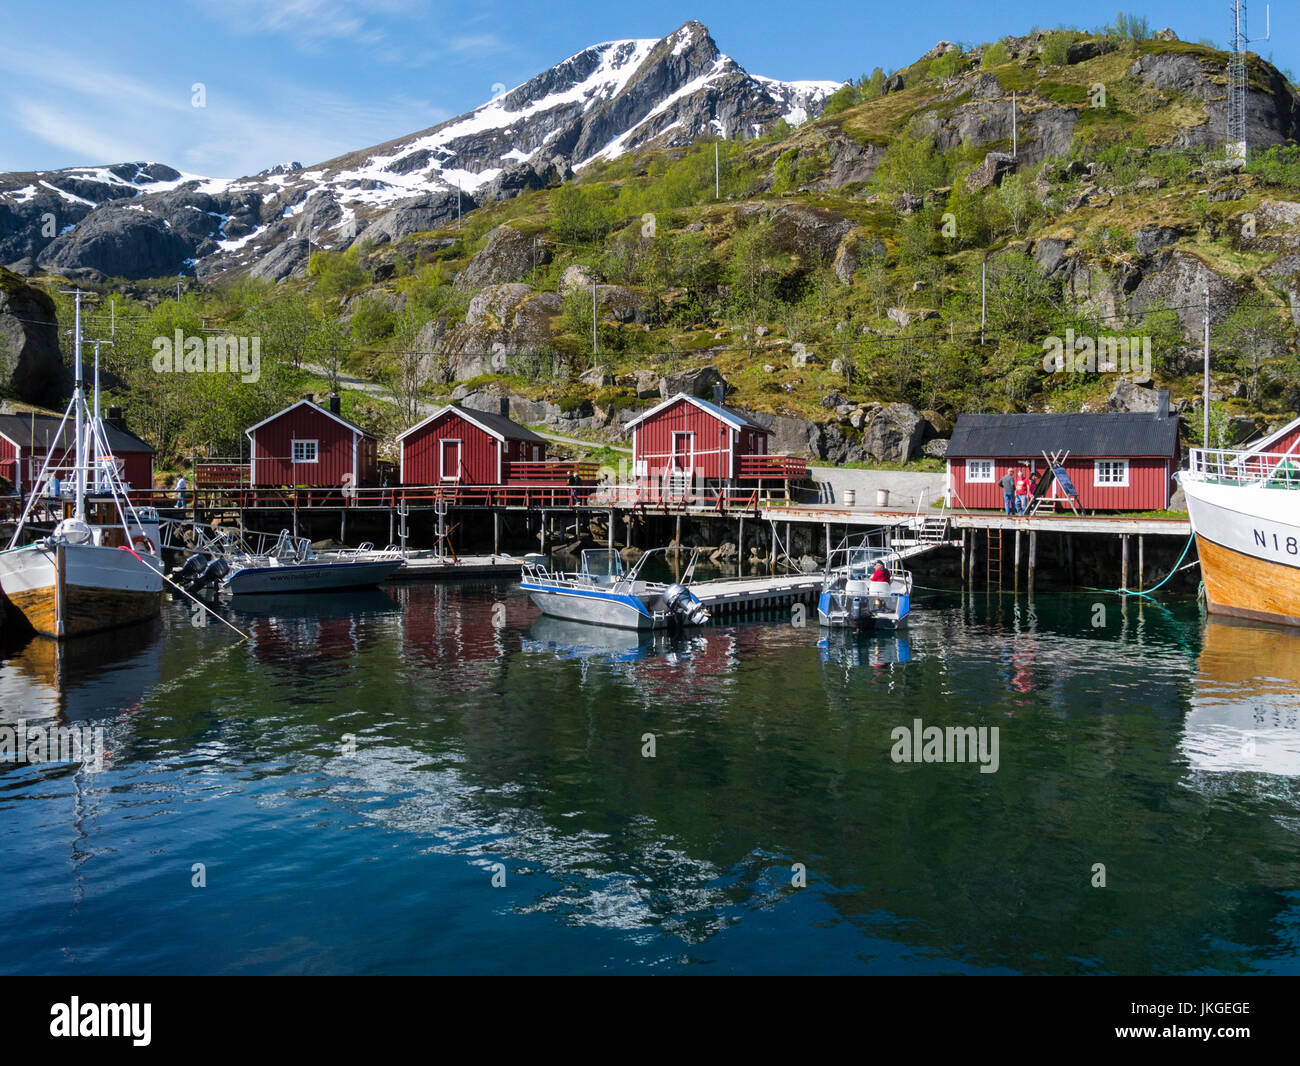 Dans le vieux port de Nusfjord village de pêcheurs préservé aujourd'hui un musée et de vacances Flakstadøy l'une des principales îles de l'archipel des Lofoten en Norvège Banque D'Images